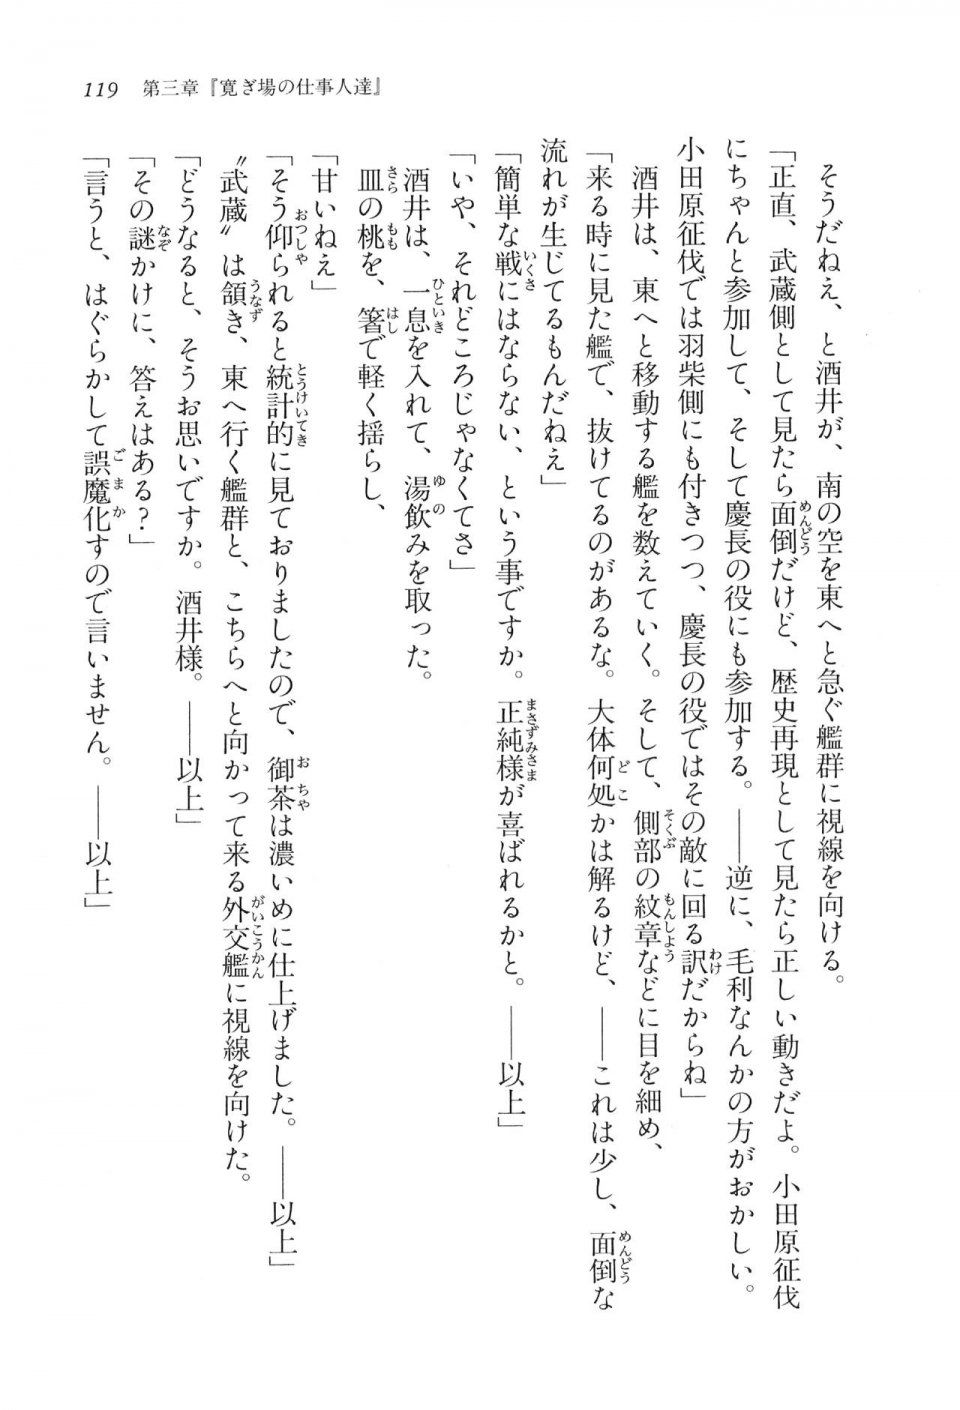 Kyoukai Senjou no Horizon LN Vol 16(7A) - Photo #119